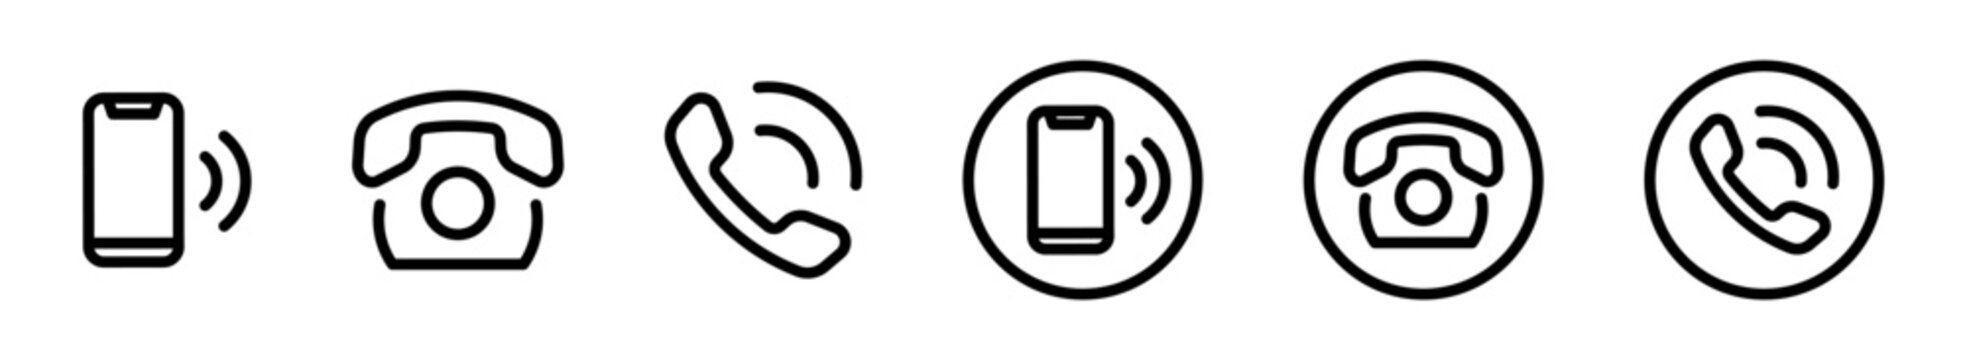  Telephone vector icon. Phone icon set. EPS 10